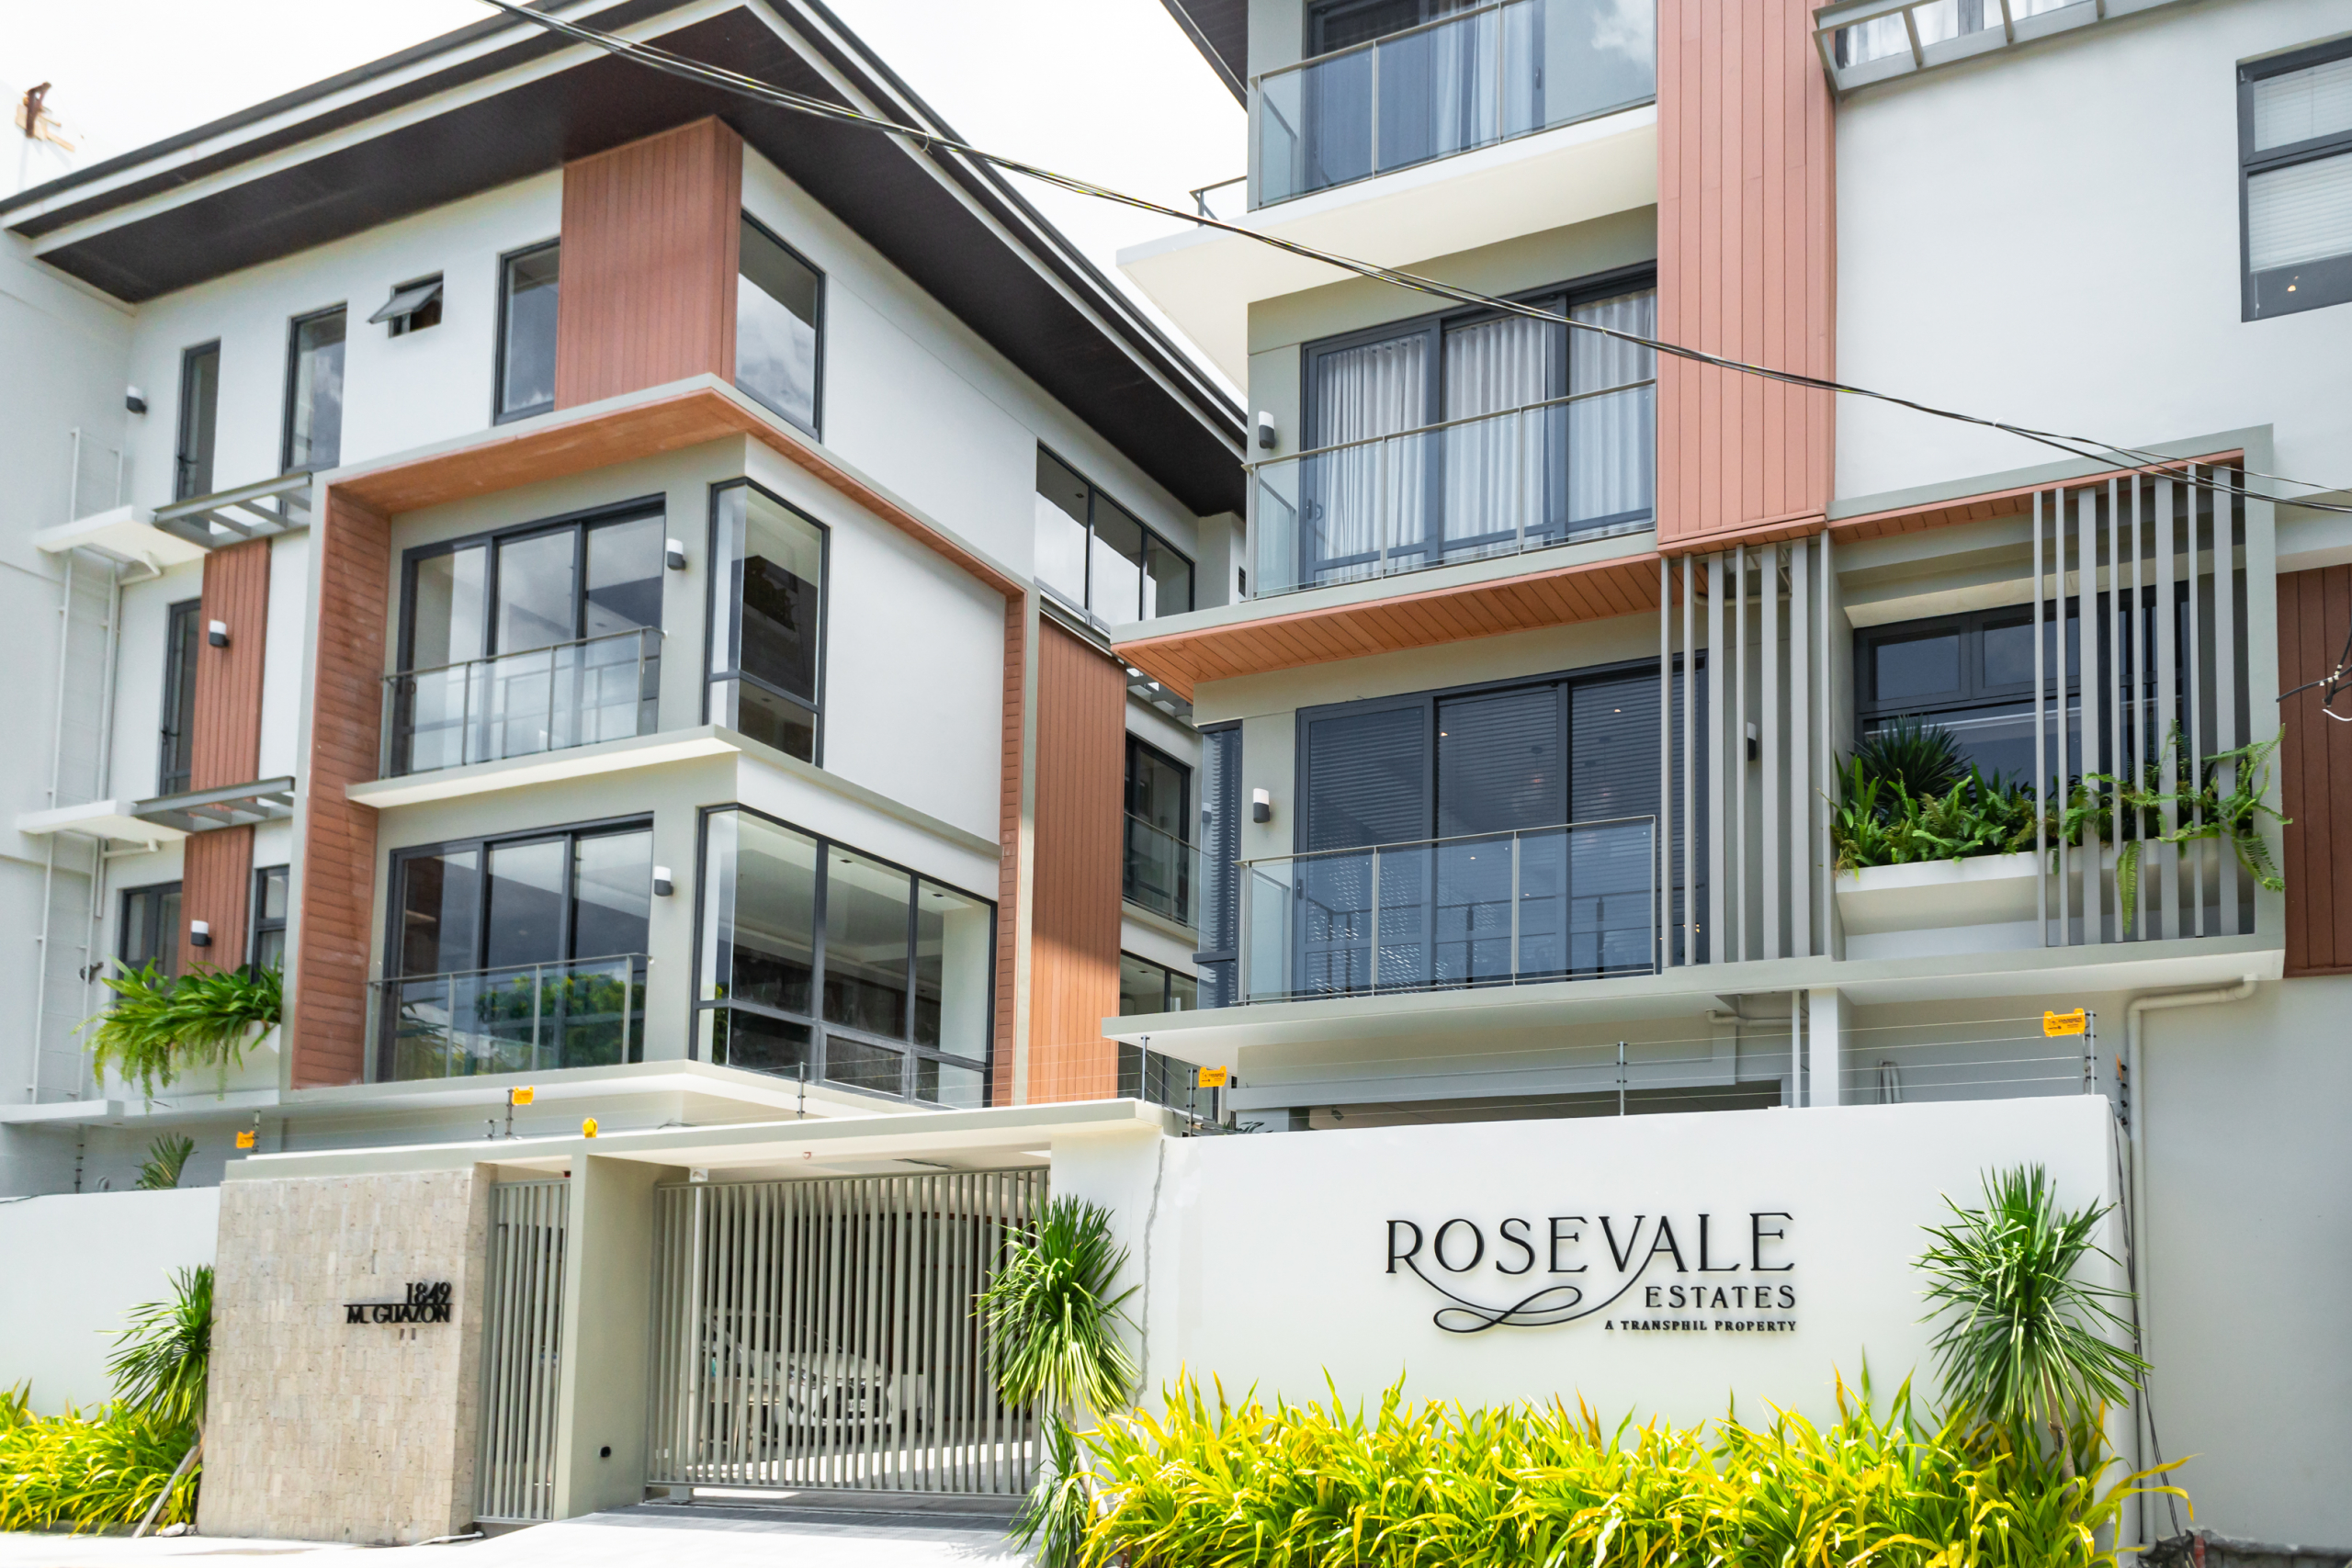 Rosevale Estates - Facade